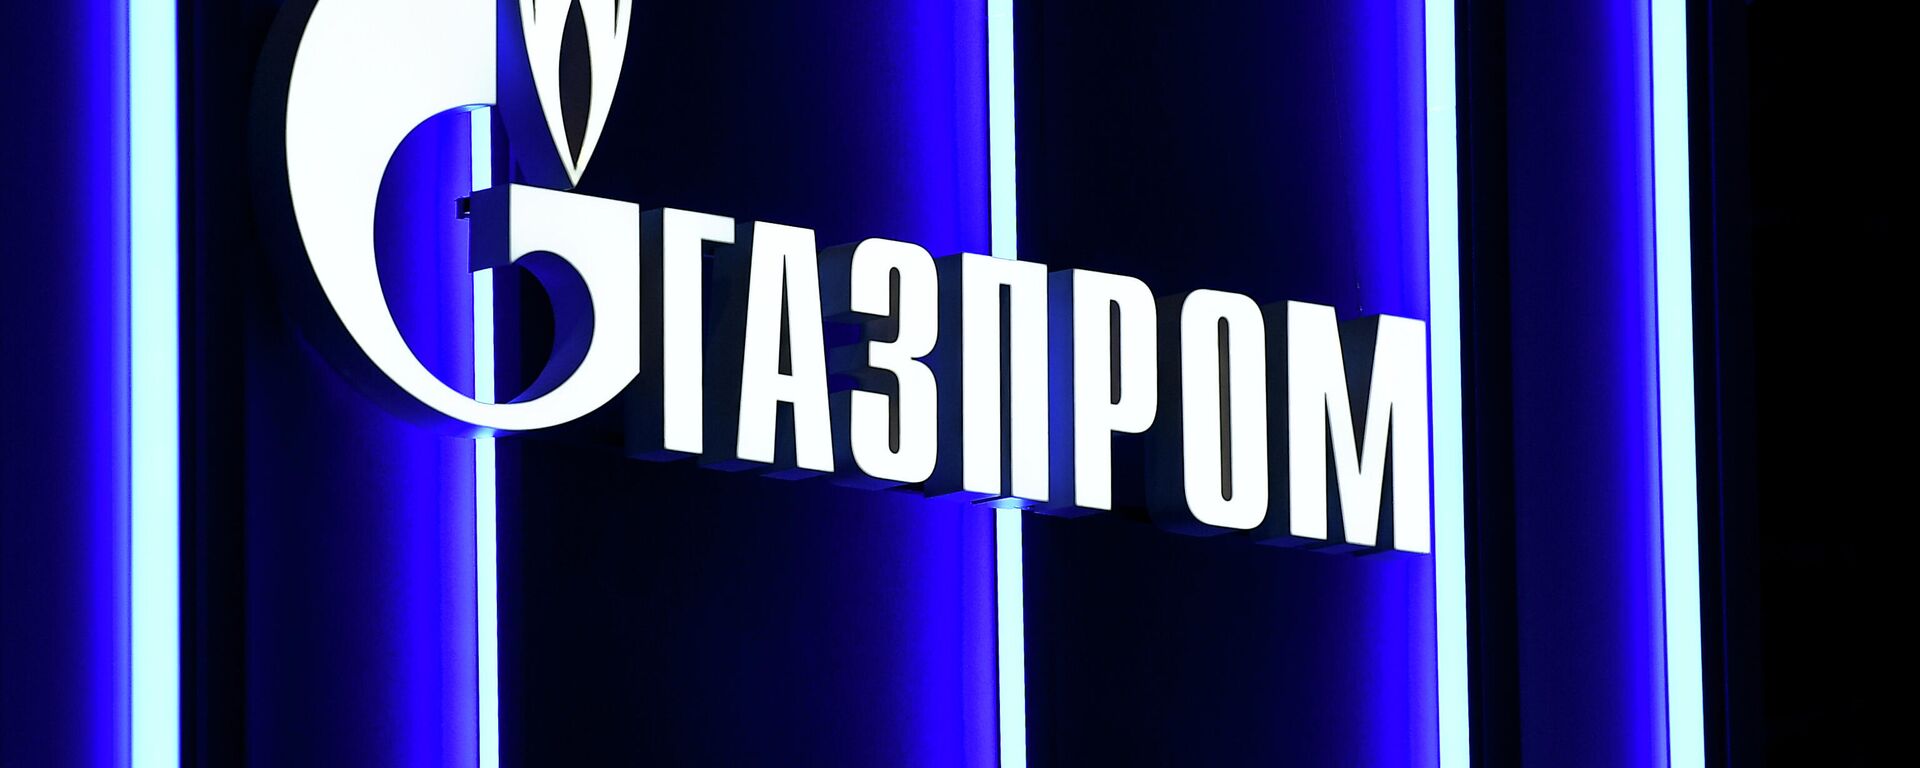 Логотип компании Газпром, архивное фото - Sputnik Литва, 1920, 24.12.2021